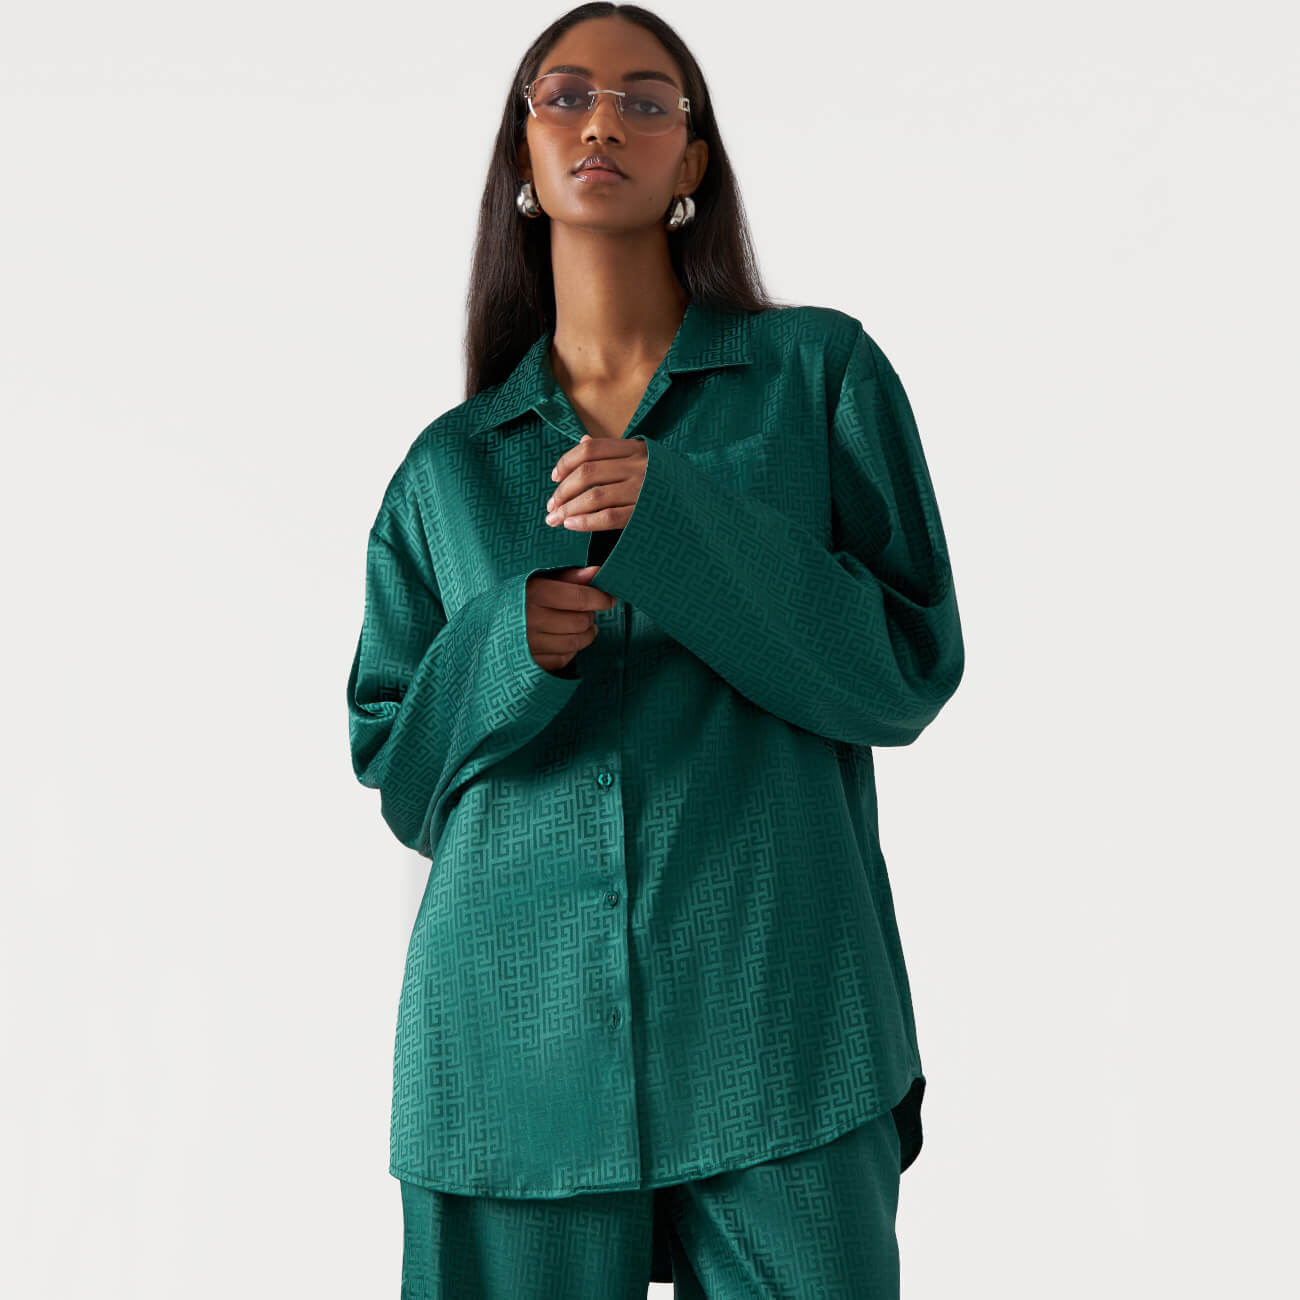 Рубашка женская, р. L, с длинным рукавом, полиэстер, зеленая, Жаккардовый узор, Agnia